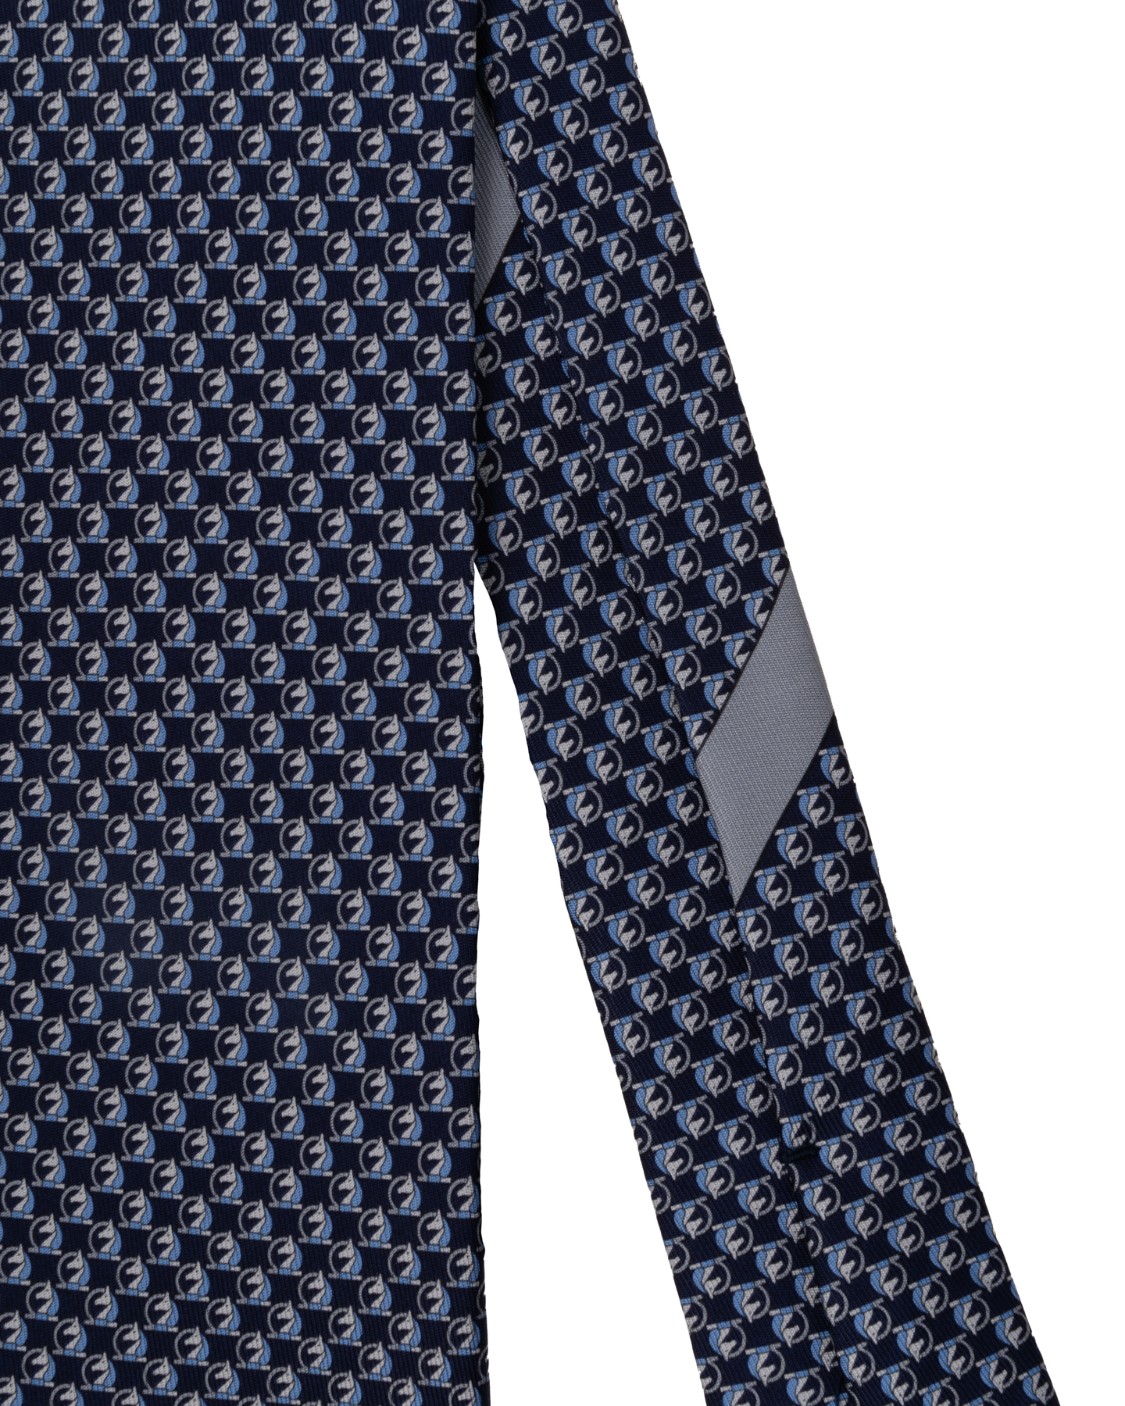 shop SALVATORE FERRAGAMO  Cravatta: Salvatore Ferragamo cravatta in seta.
Cravatta in pura seta decorata con pattern di destrieri.
Composizione: 100% Seta.
Made in Italy.. 350406 4 NAPOLEONE-0740155 001 number 151741